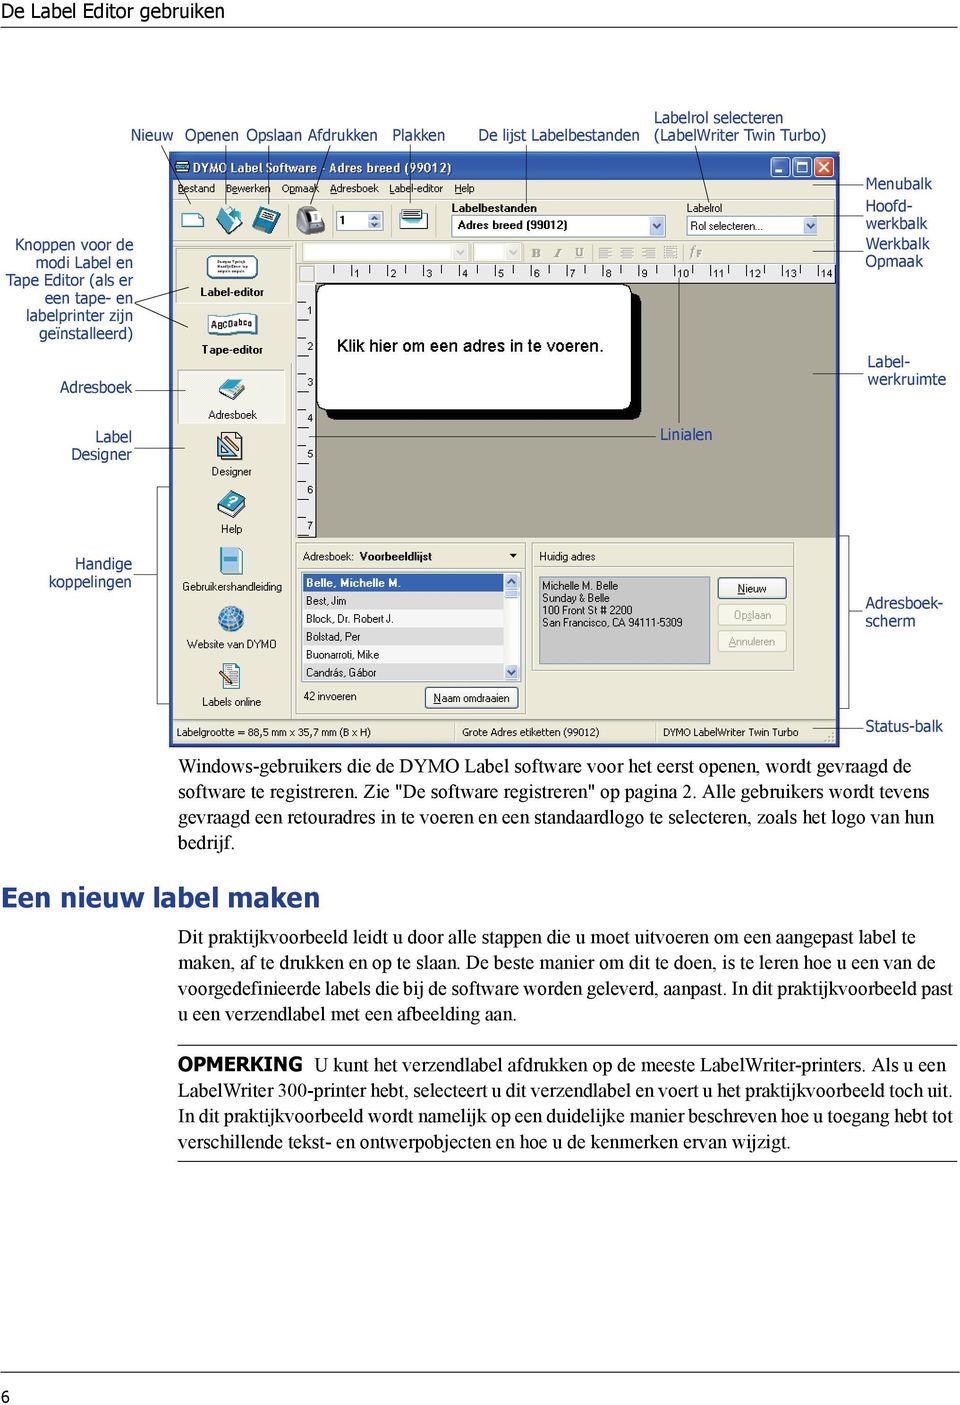 Windows-gebruikers die de DYMO Label software voor het eerst openen, wordt gevraagd de software te registreren. Zie "De software registreren" op pagina 2.